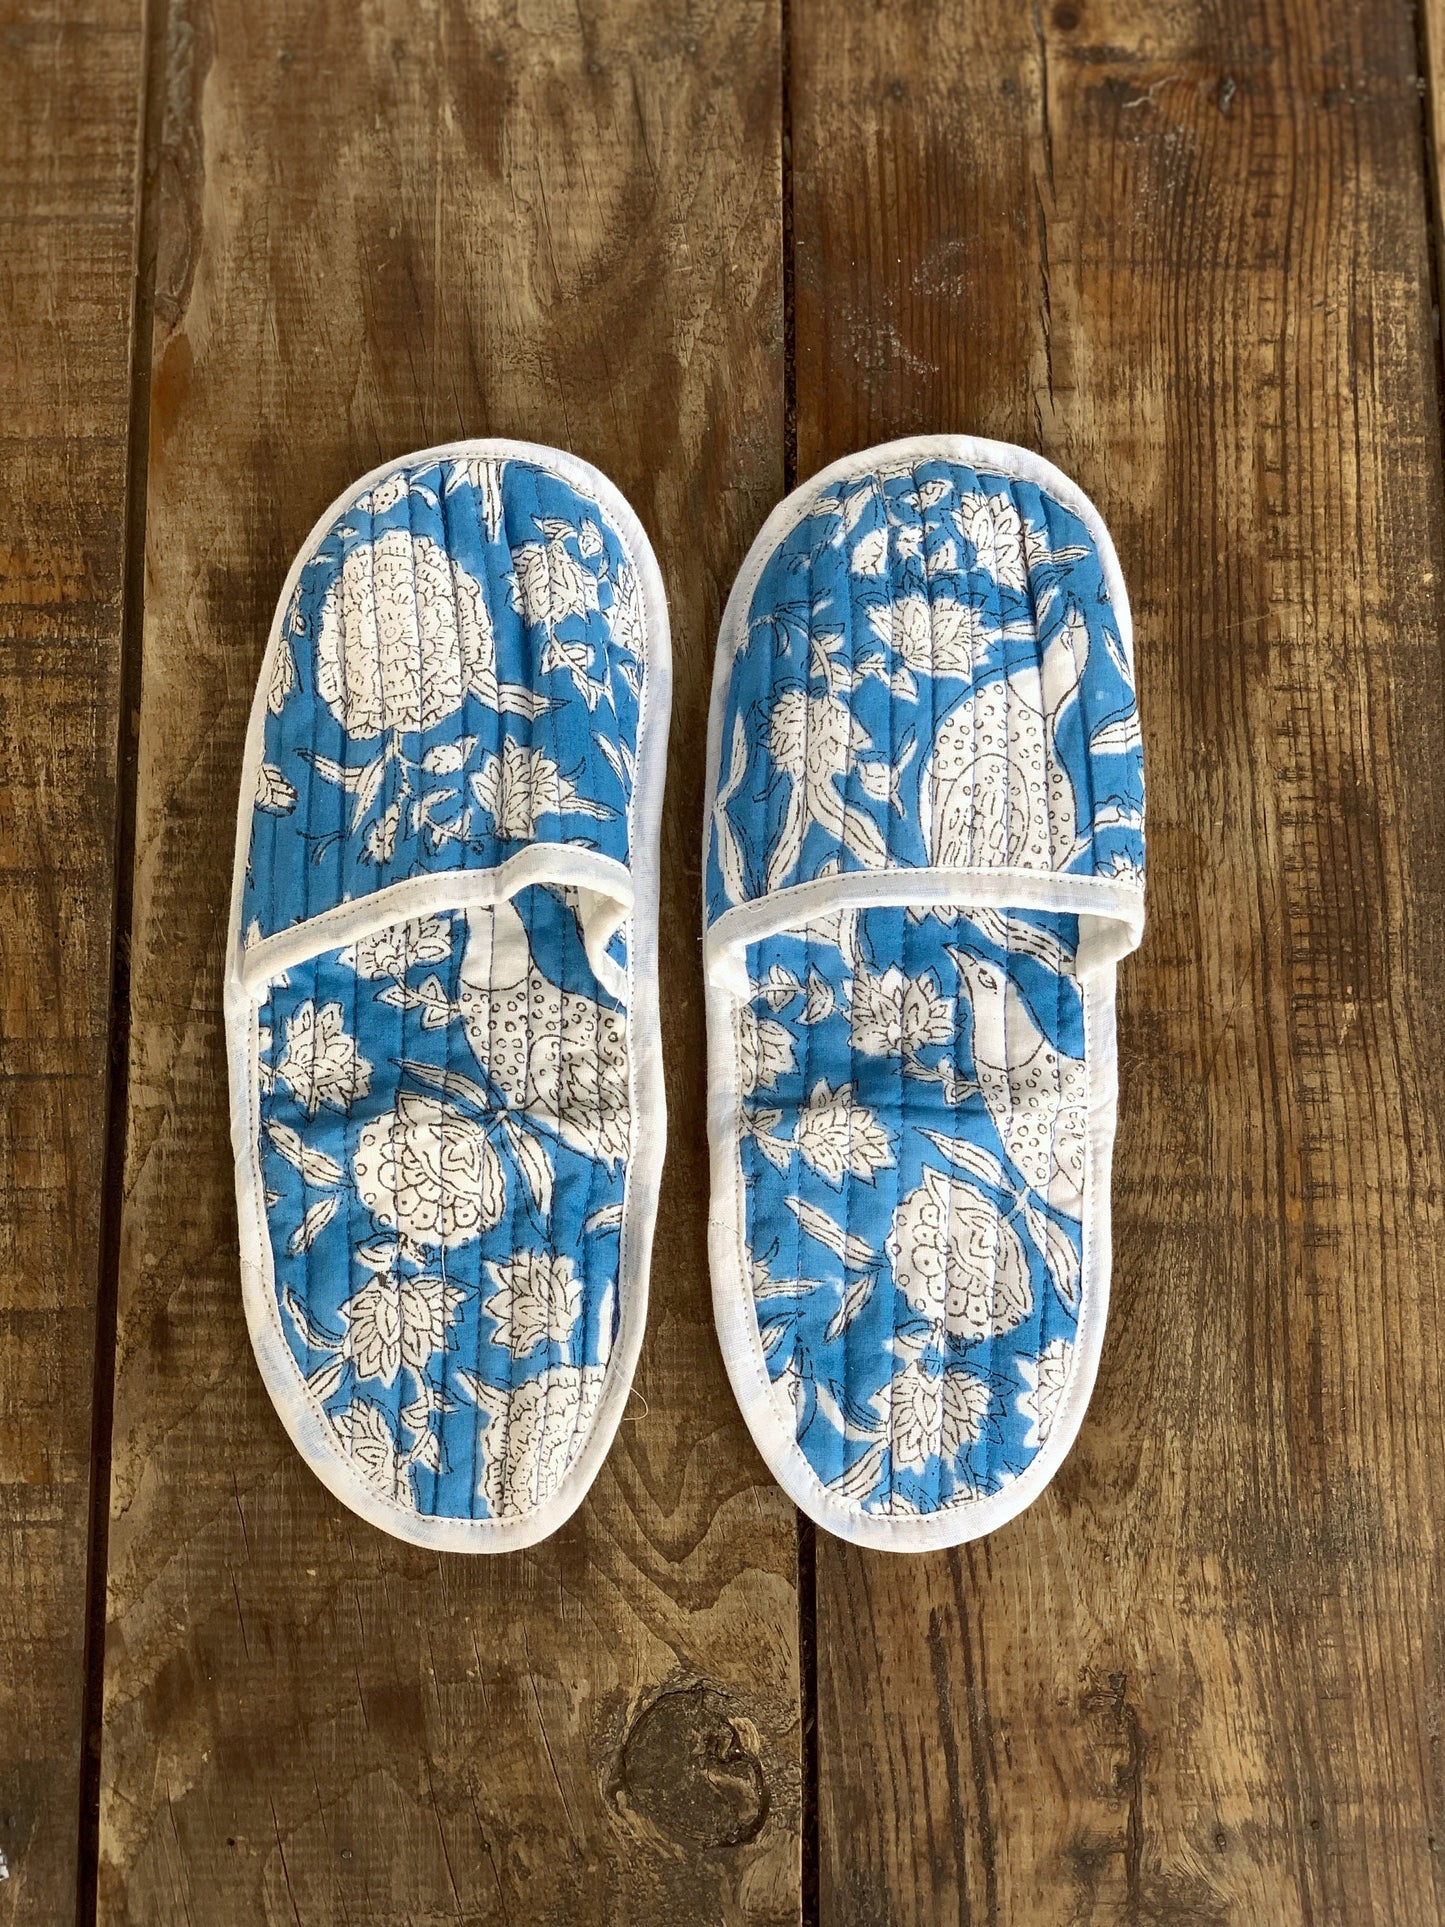 Zapatillas de viaje enguatadas con bolsa a juego · Algodón puro estampado block print en India · Zapatillas de baño ducha · Azul flor blanco